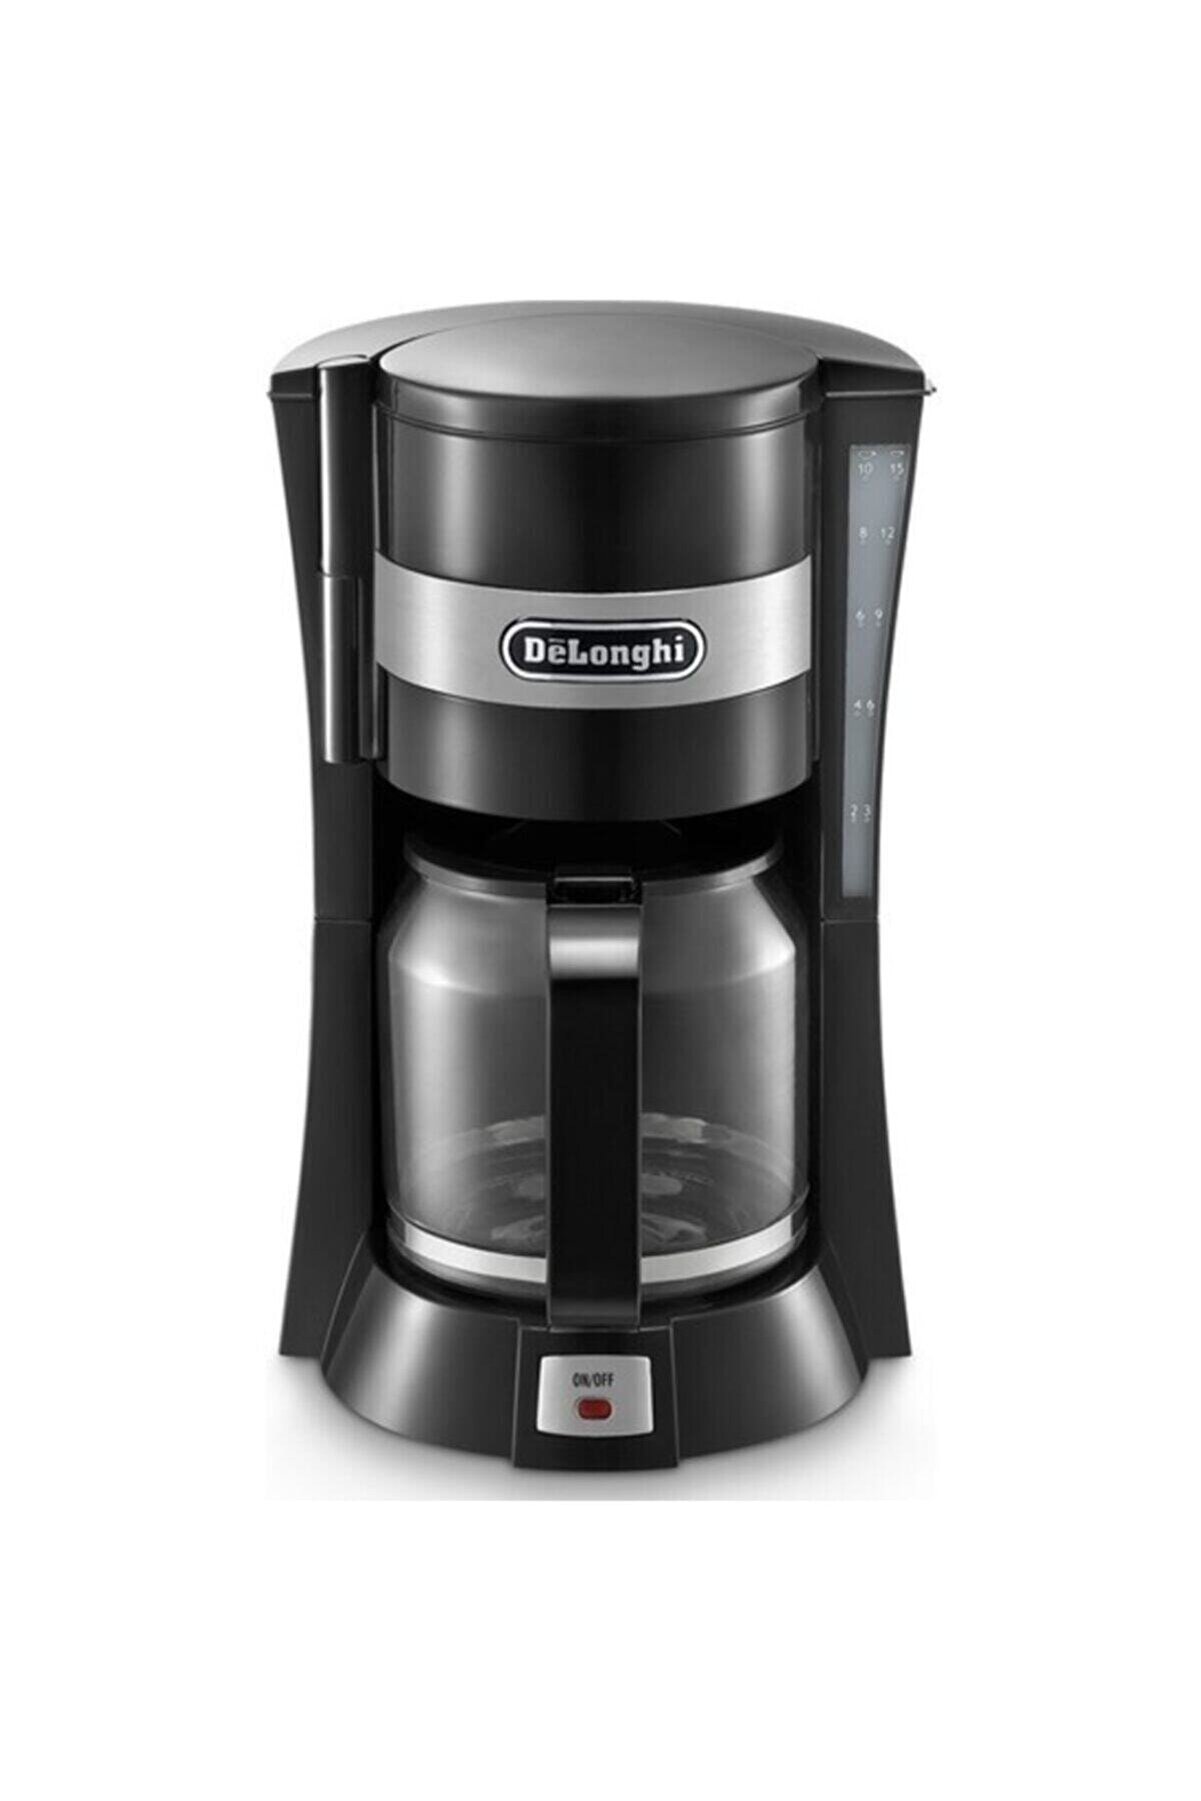 Delonghi Filtre Kahve Makinesi Icm15210